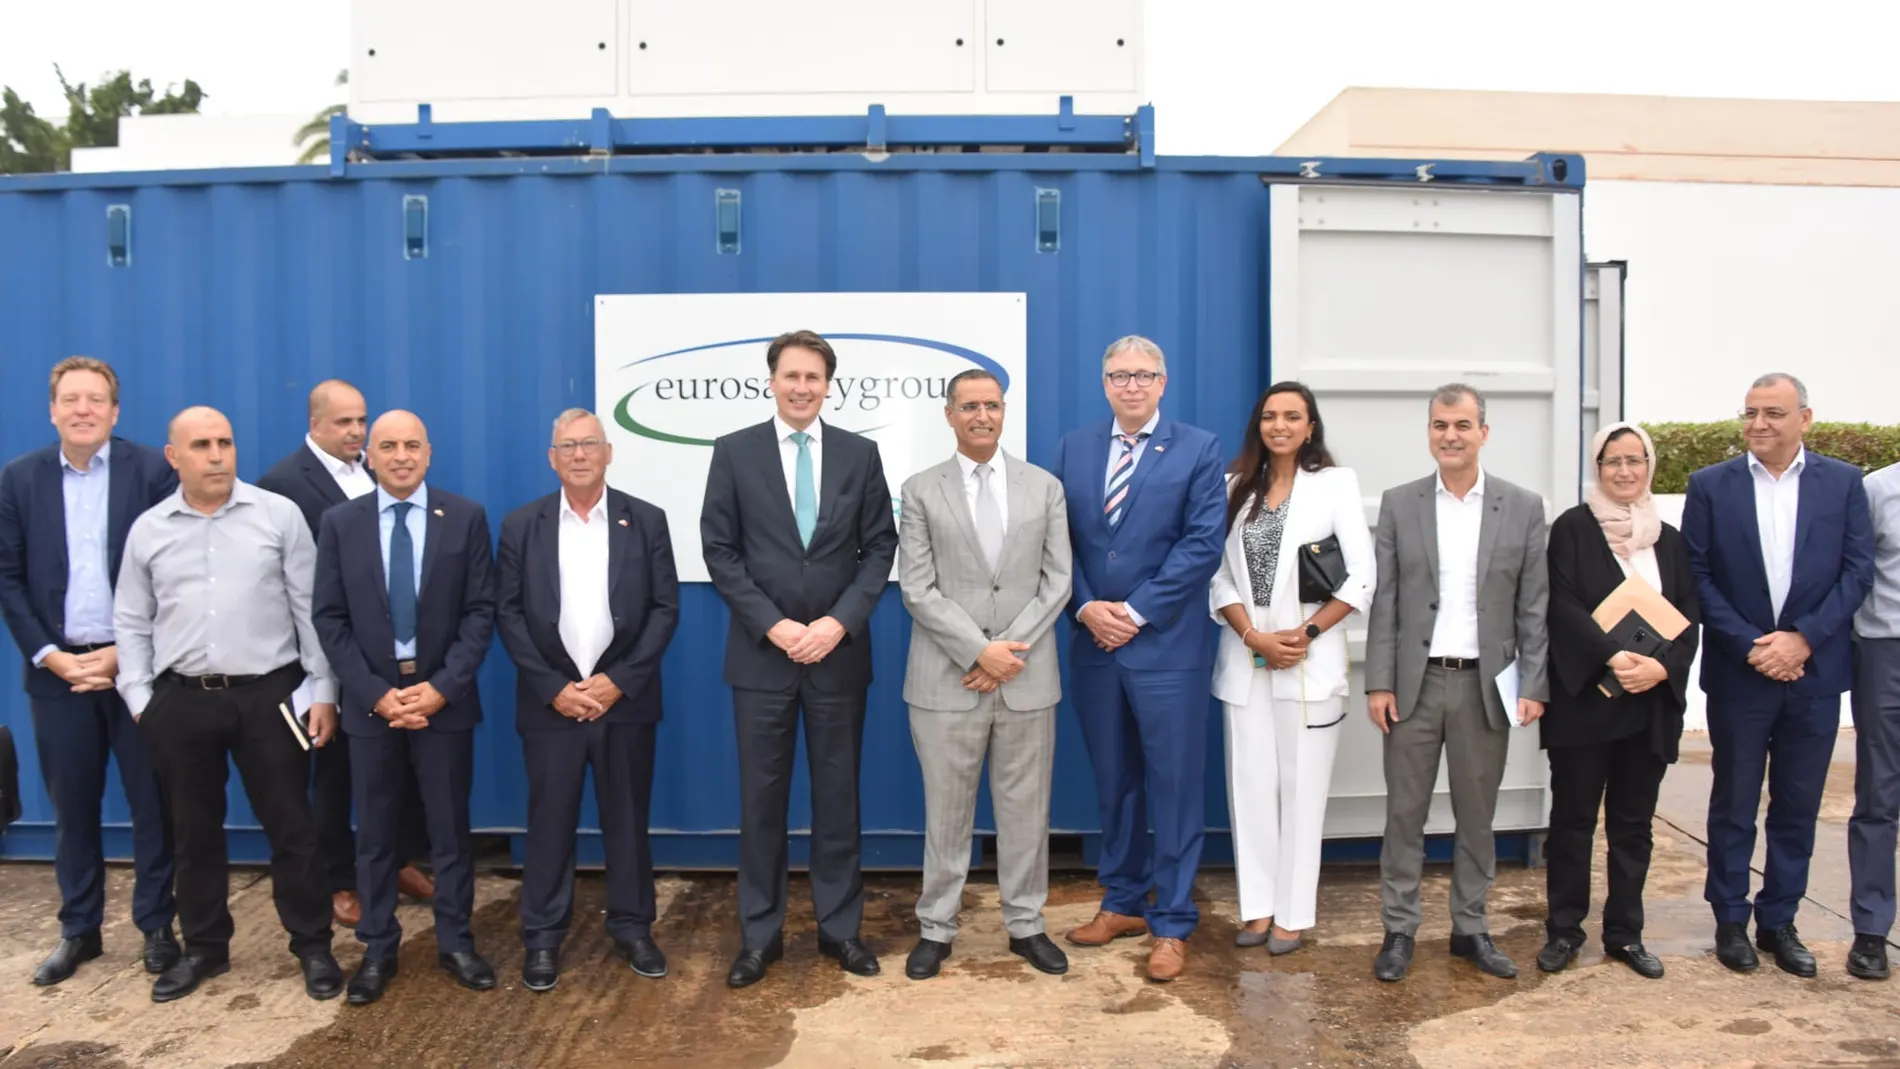 Euro Safety Group, ha presentado este mes de junio en Marruecos un exitoso proyecto piloto dentro del marco de la sostenibilidad